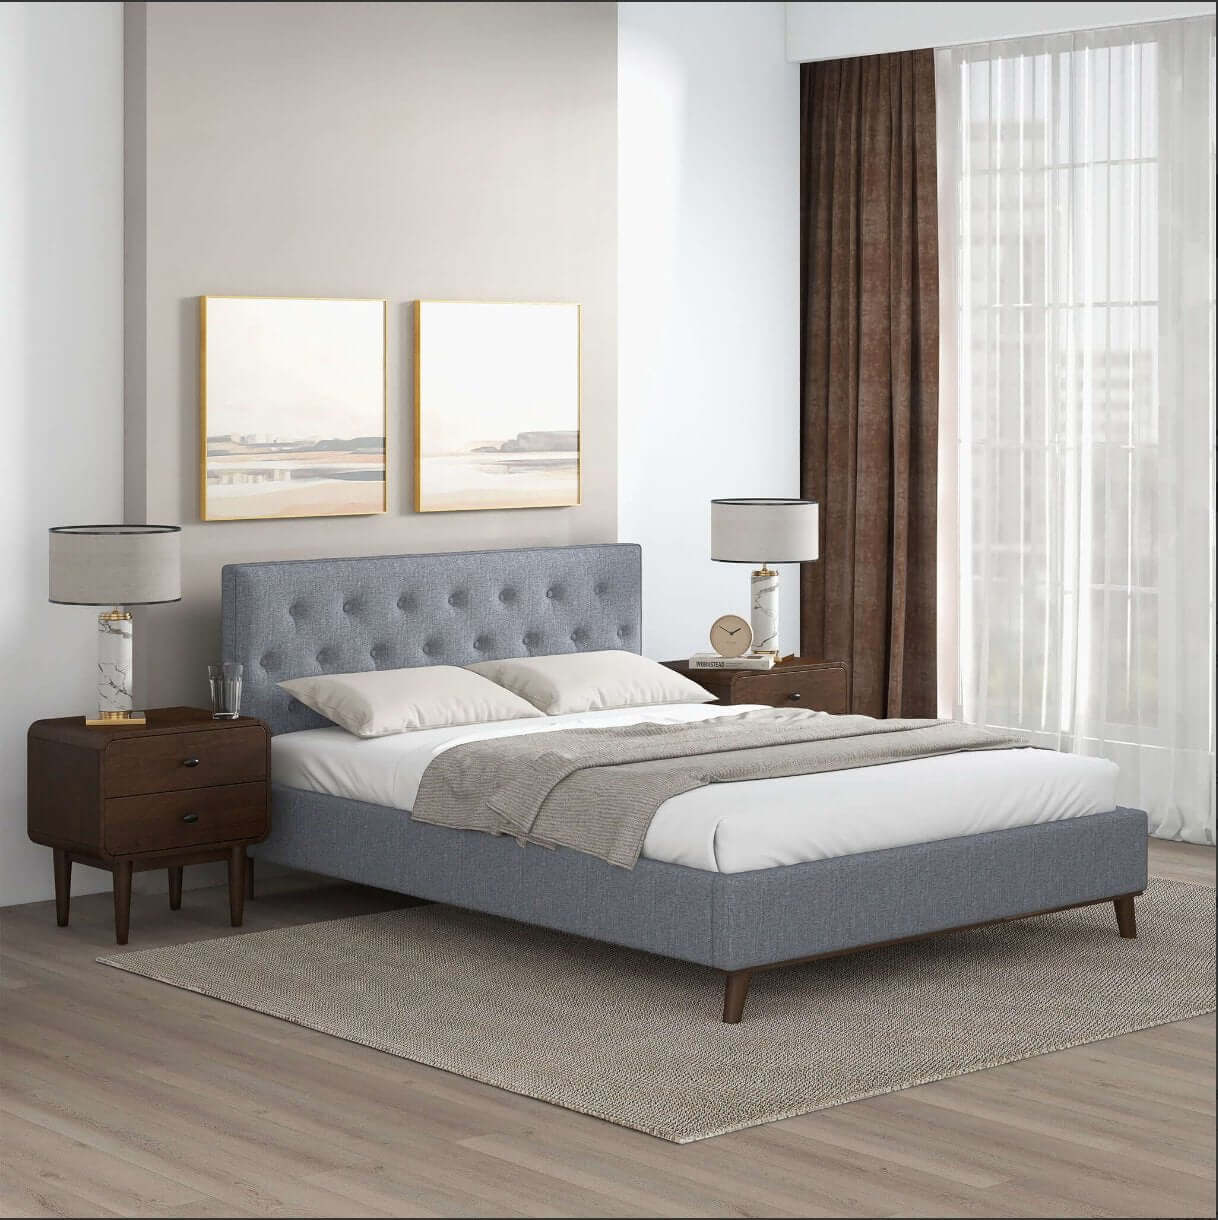 Graceville MCM Style Tufted Upholstered Platform Bed Frame - Revel Sofa 